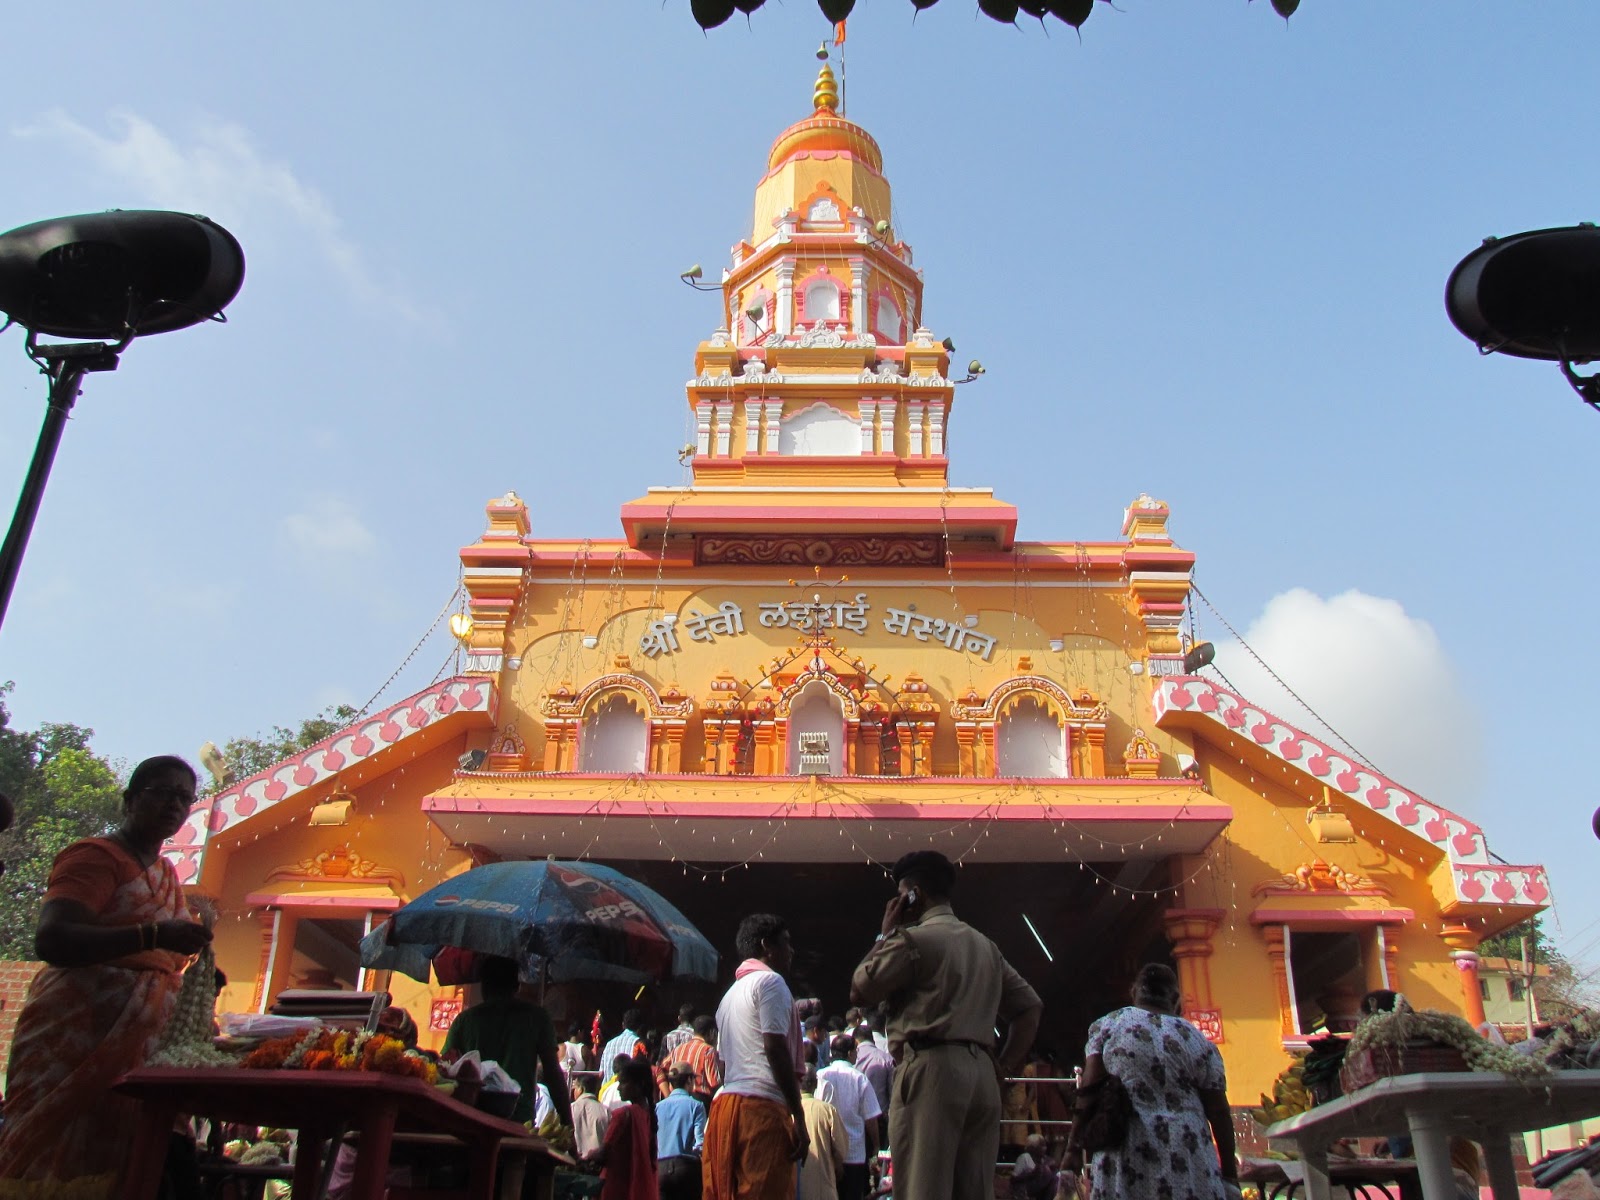 The Lairai Temple